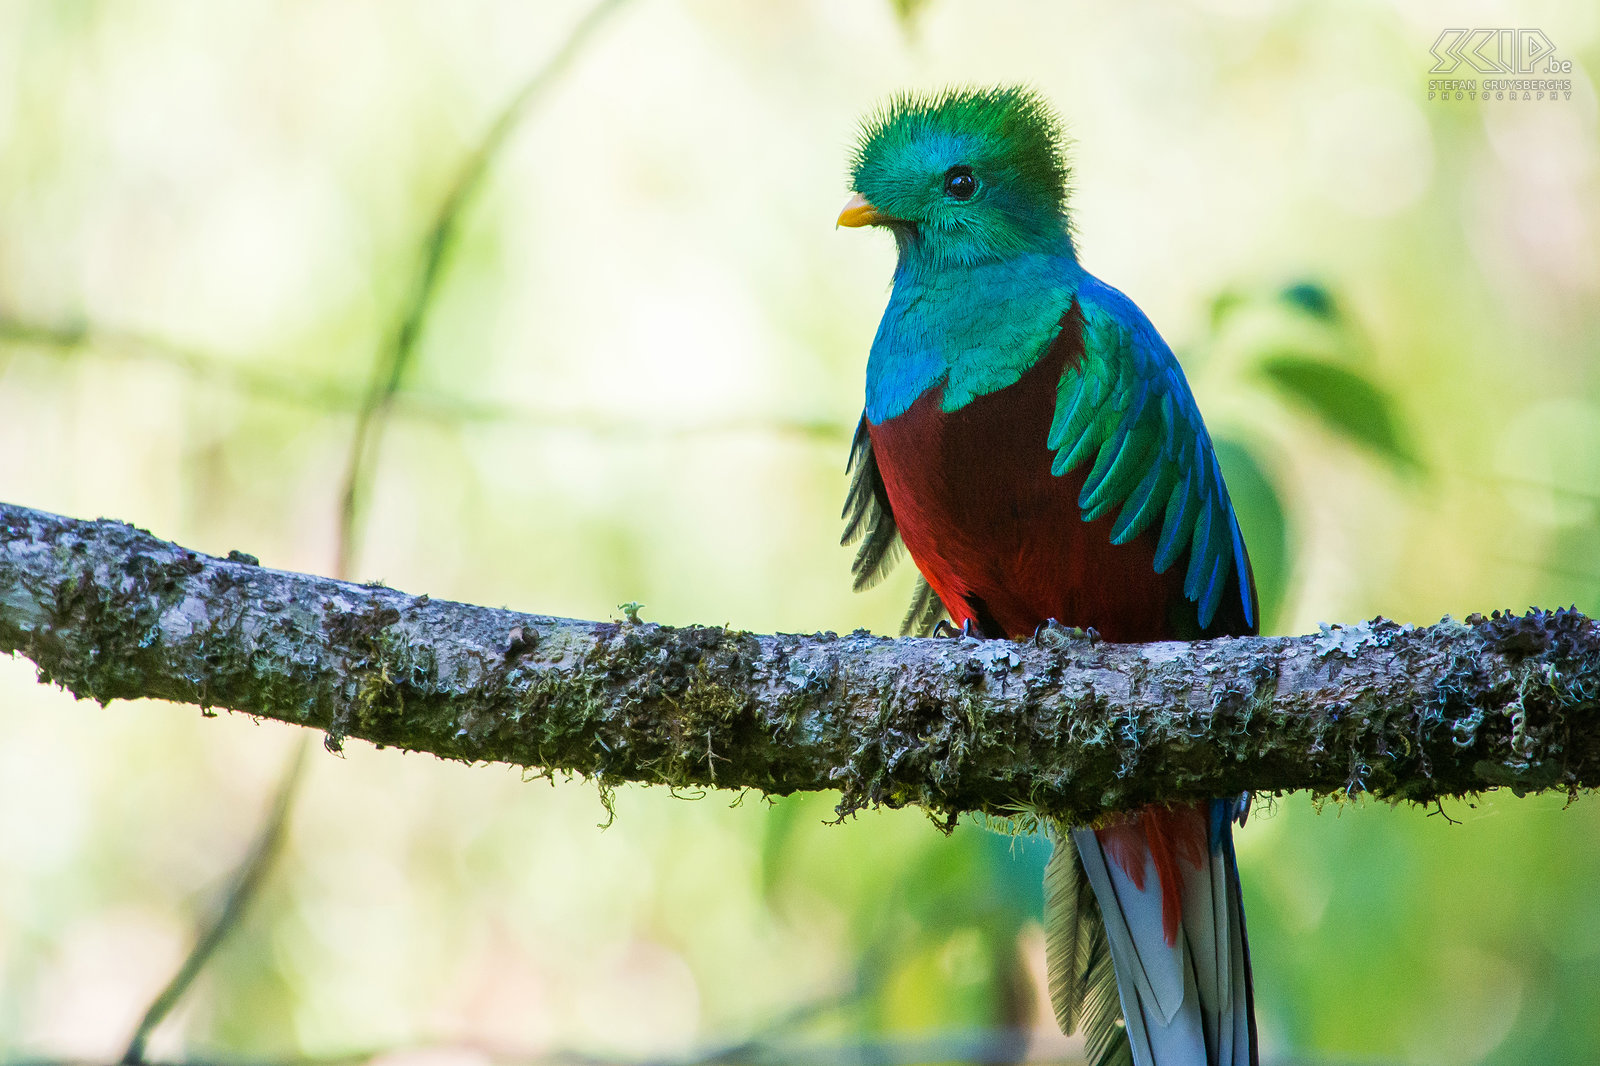 San Gerardo de Dota - Closeup quetzal Closeup van een mannelijke quetzal (pharomachrus mocinno). De quetzal is groen/blauw-violet met een rode borst en een zeer lange staart met één of twee veren. Het mannetje heeft een helm-achtige kuif.  Stefan Cruysberghs